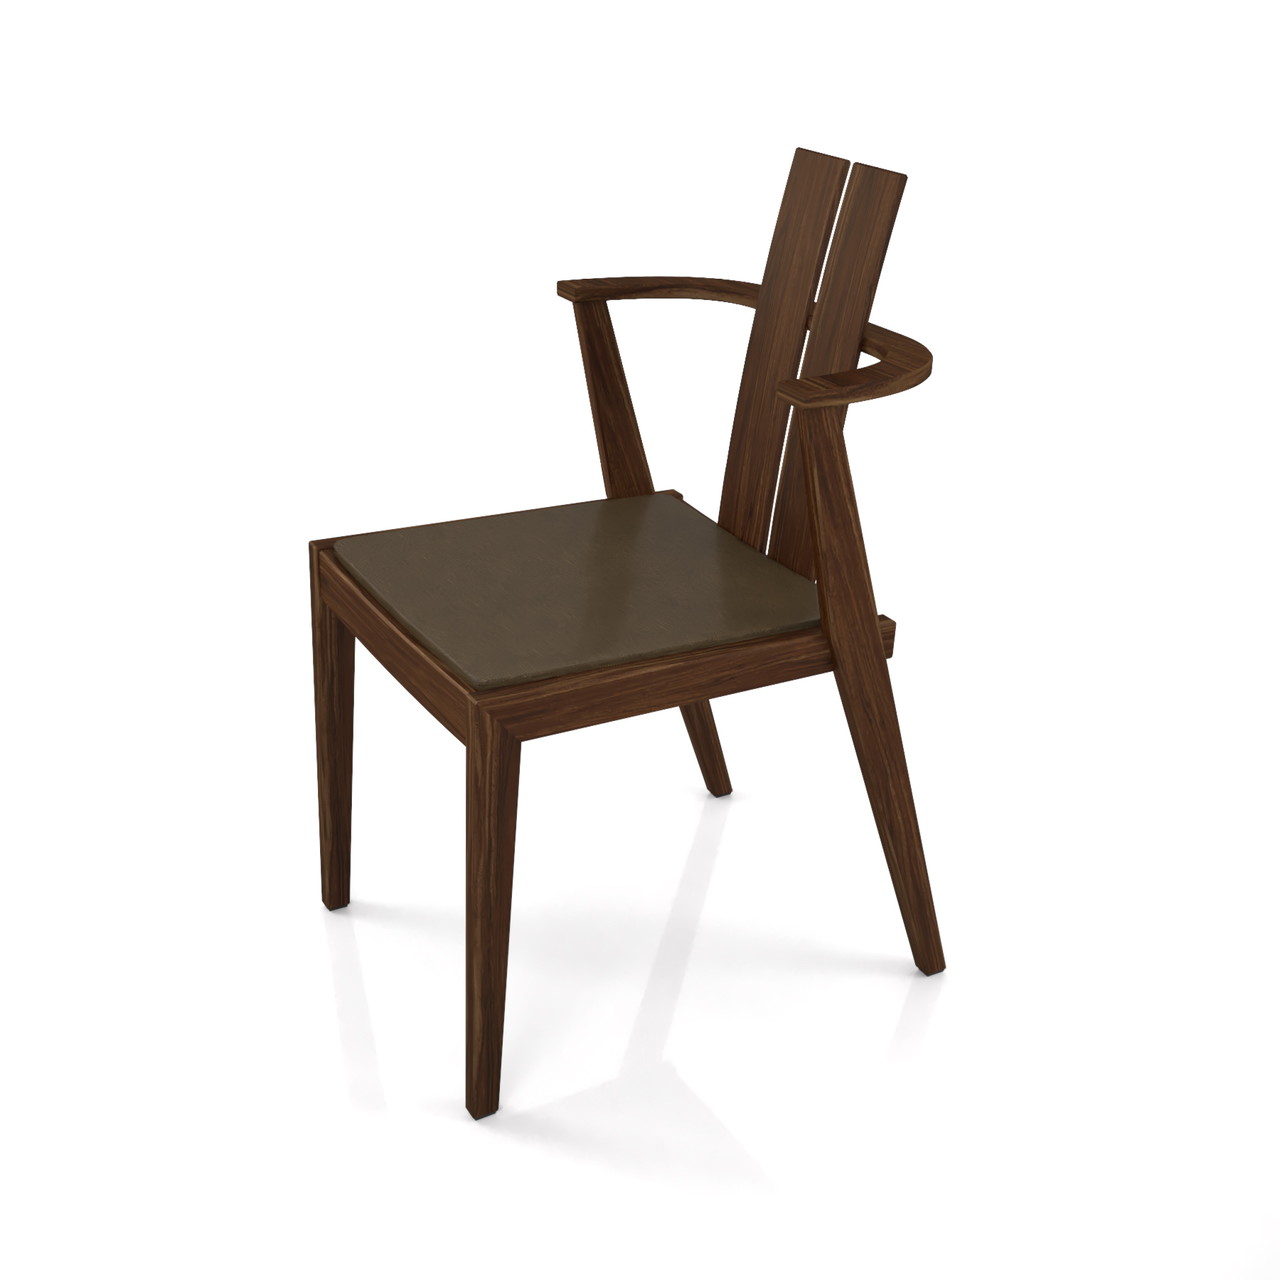 濃い茶色い木製の ダイニングチェアの3DCADデータ丨インテリア 家具 椅子丨無料 商用可能 フリー素材 フリーデータ丨データ形式はformZ ・3ds・objファイルです